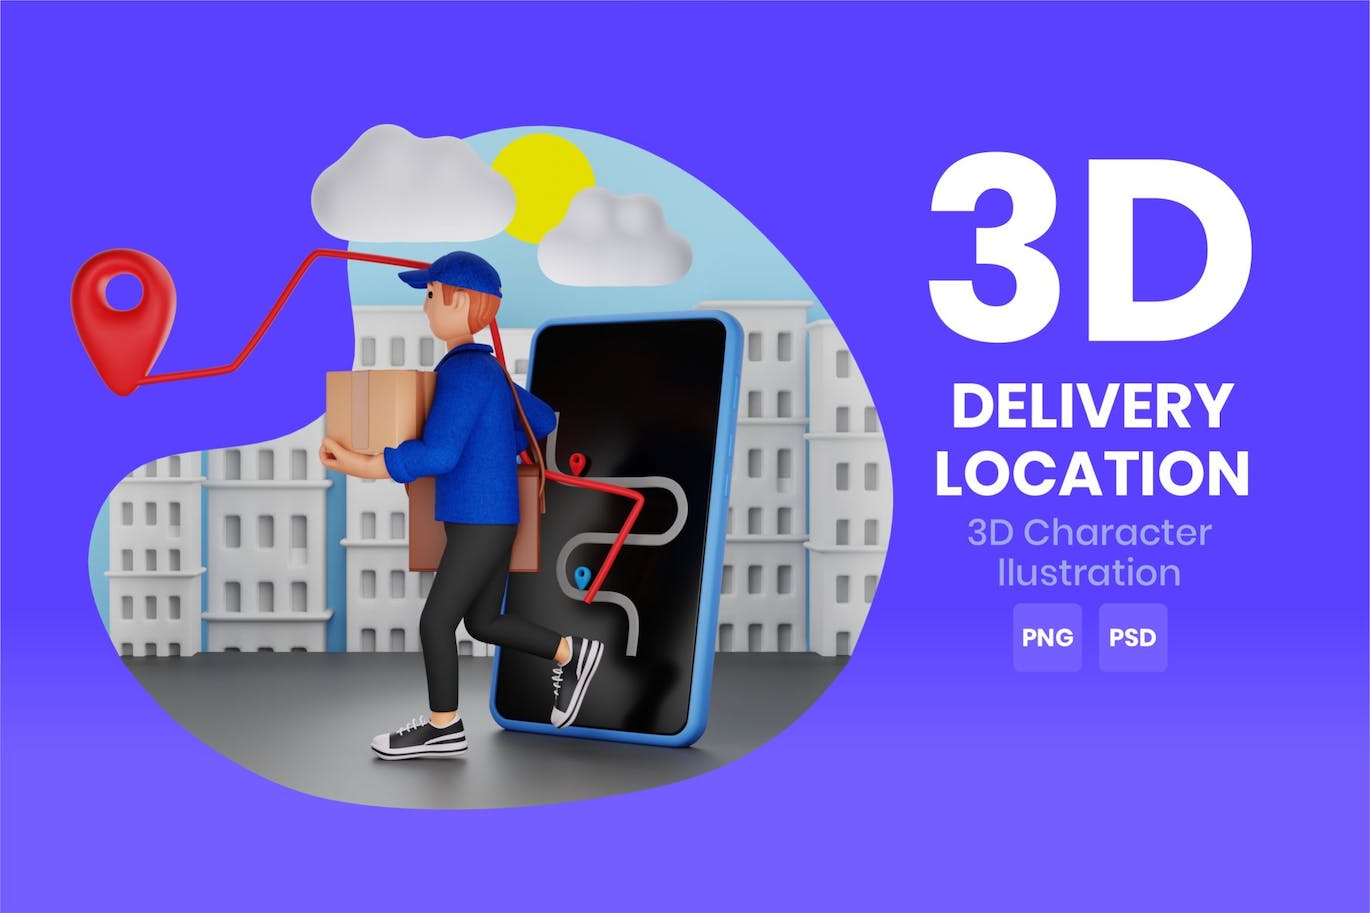 配送地点3D角色插画素材 Delivery Location 3D Character Illustration 图片素材 第1张